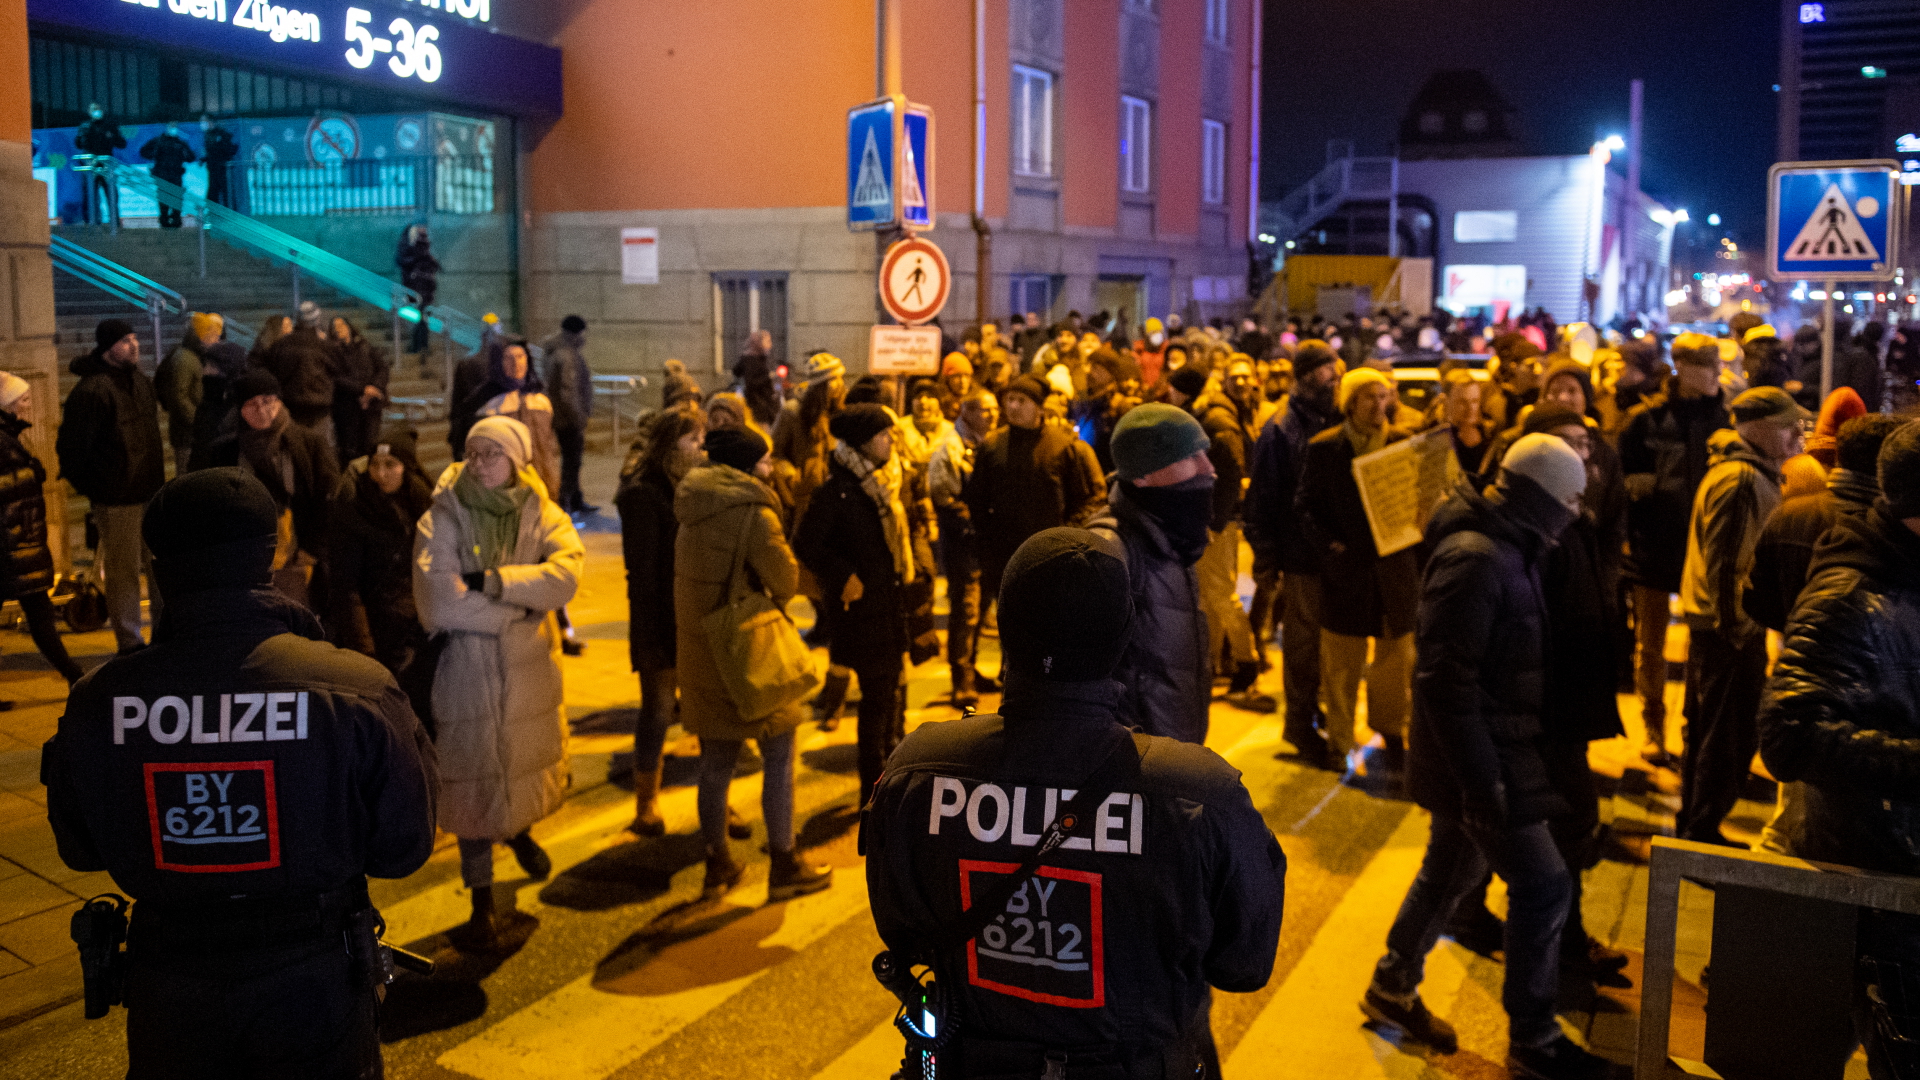 Polizisten bei Corona-Demo in München attackiert